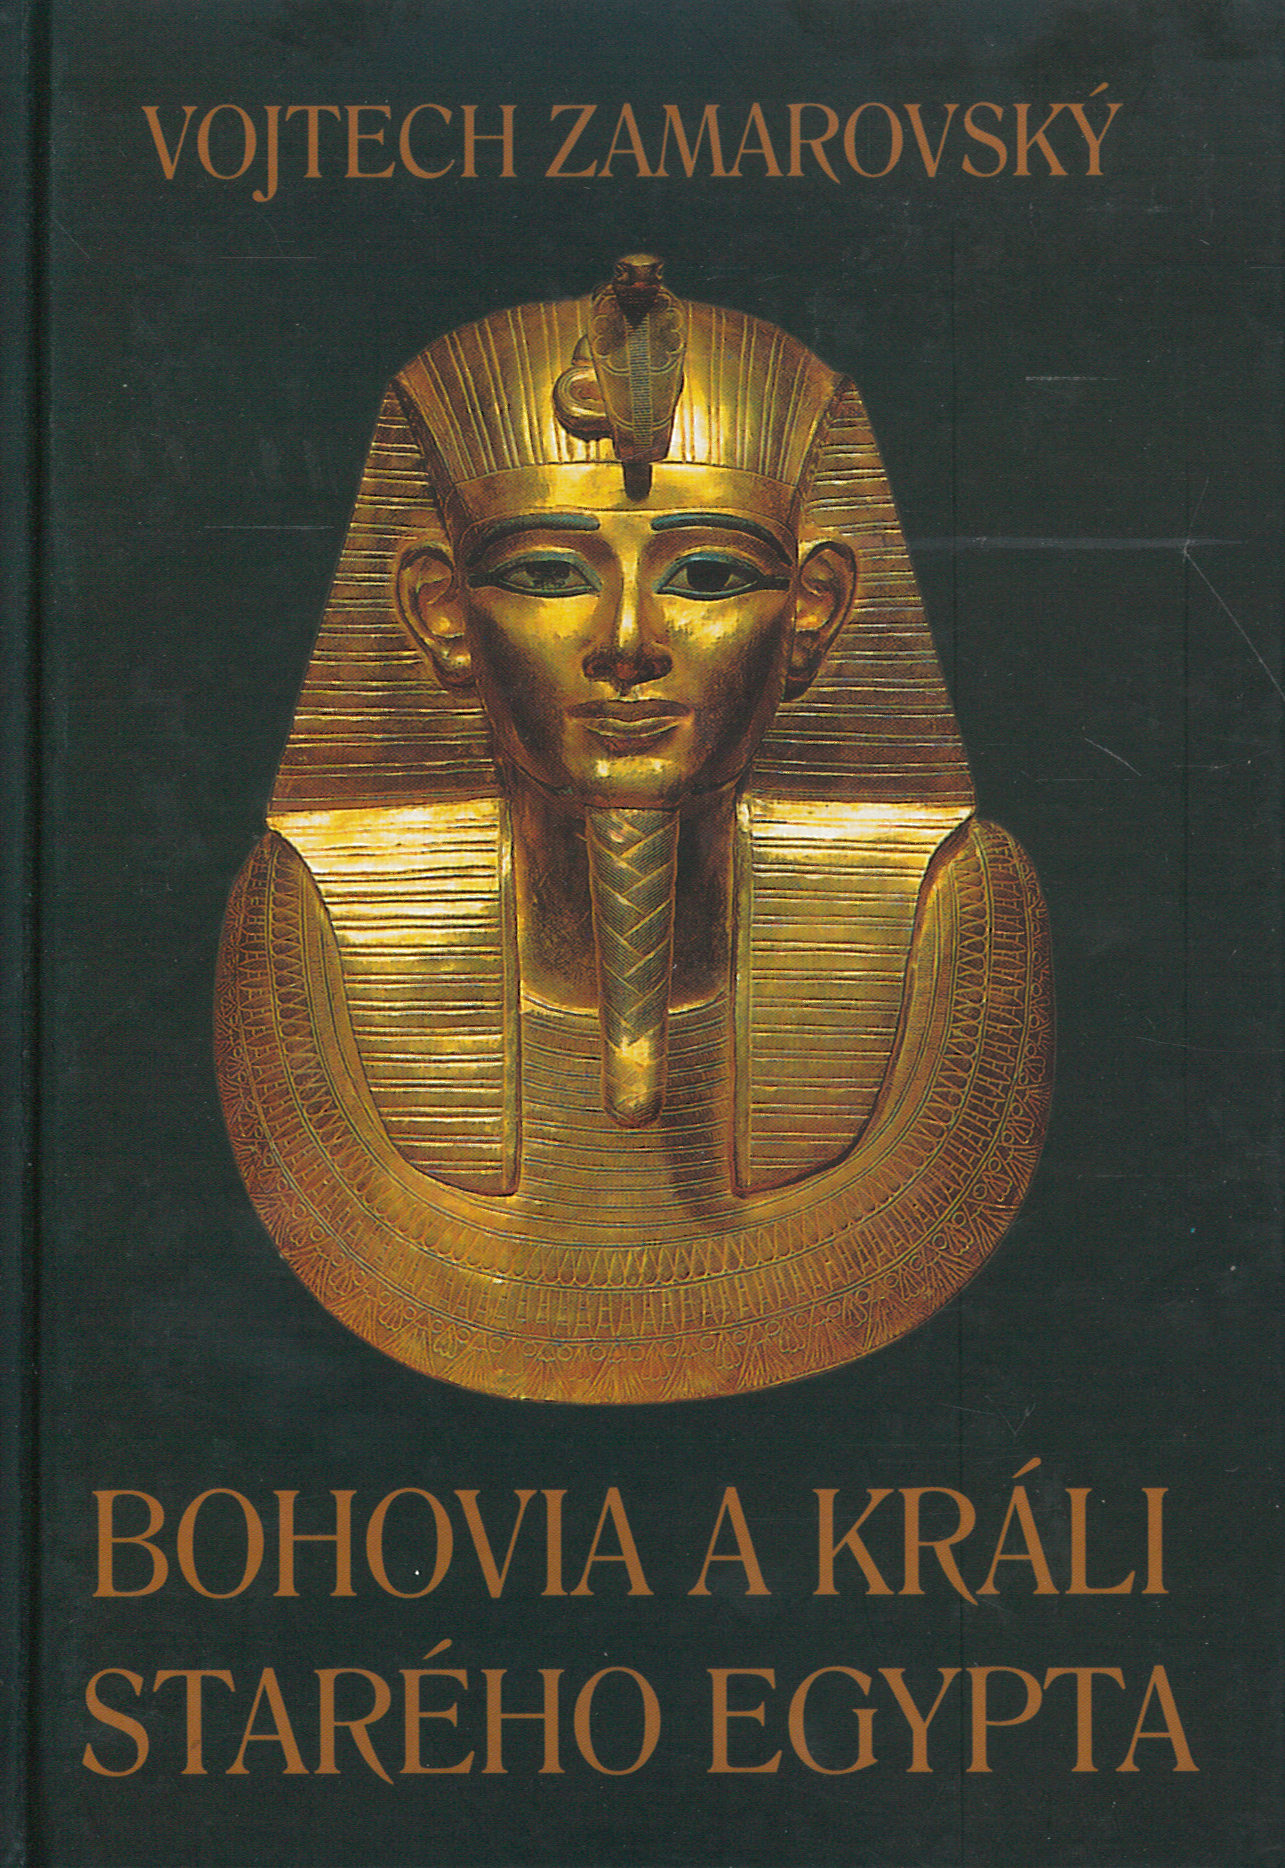 Bohovia a králi starého Egypta (Vojtech Zamarovský)